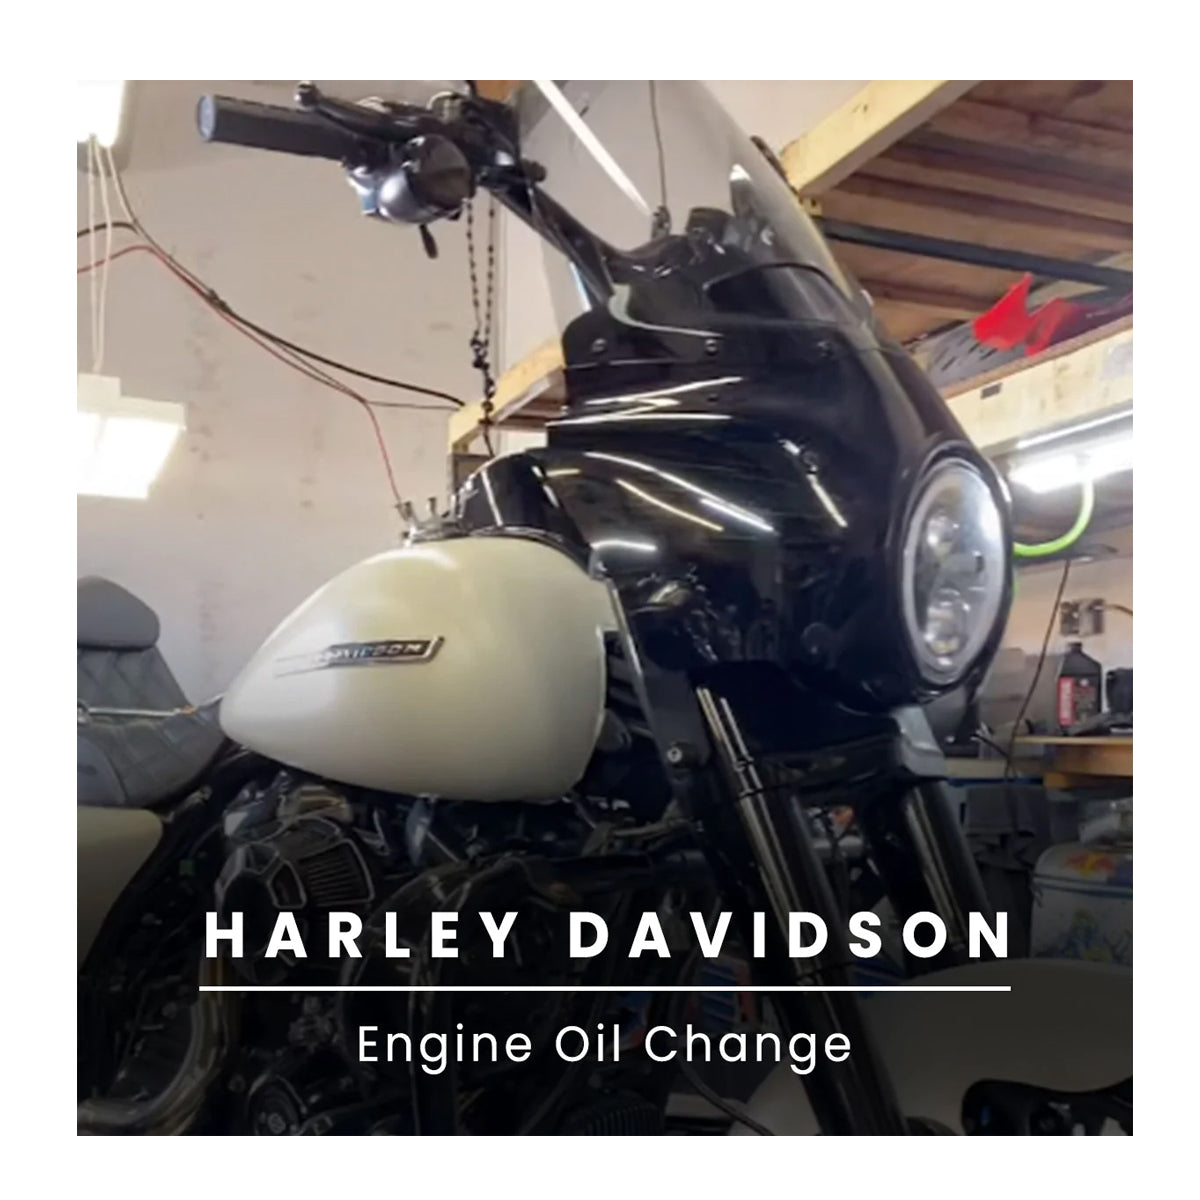 Harley Davidson Engine Oil Change Service